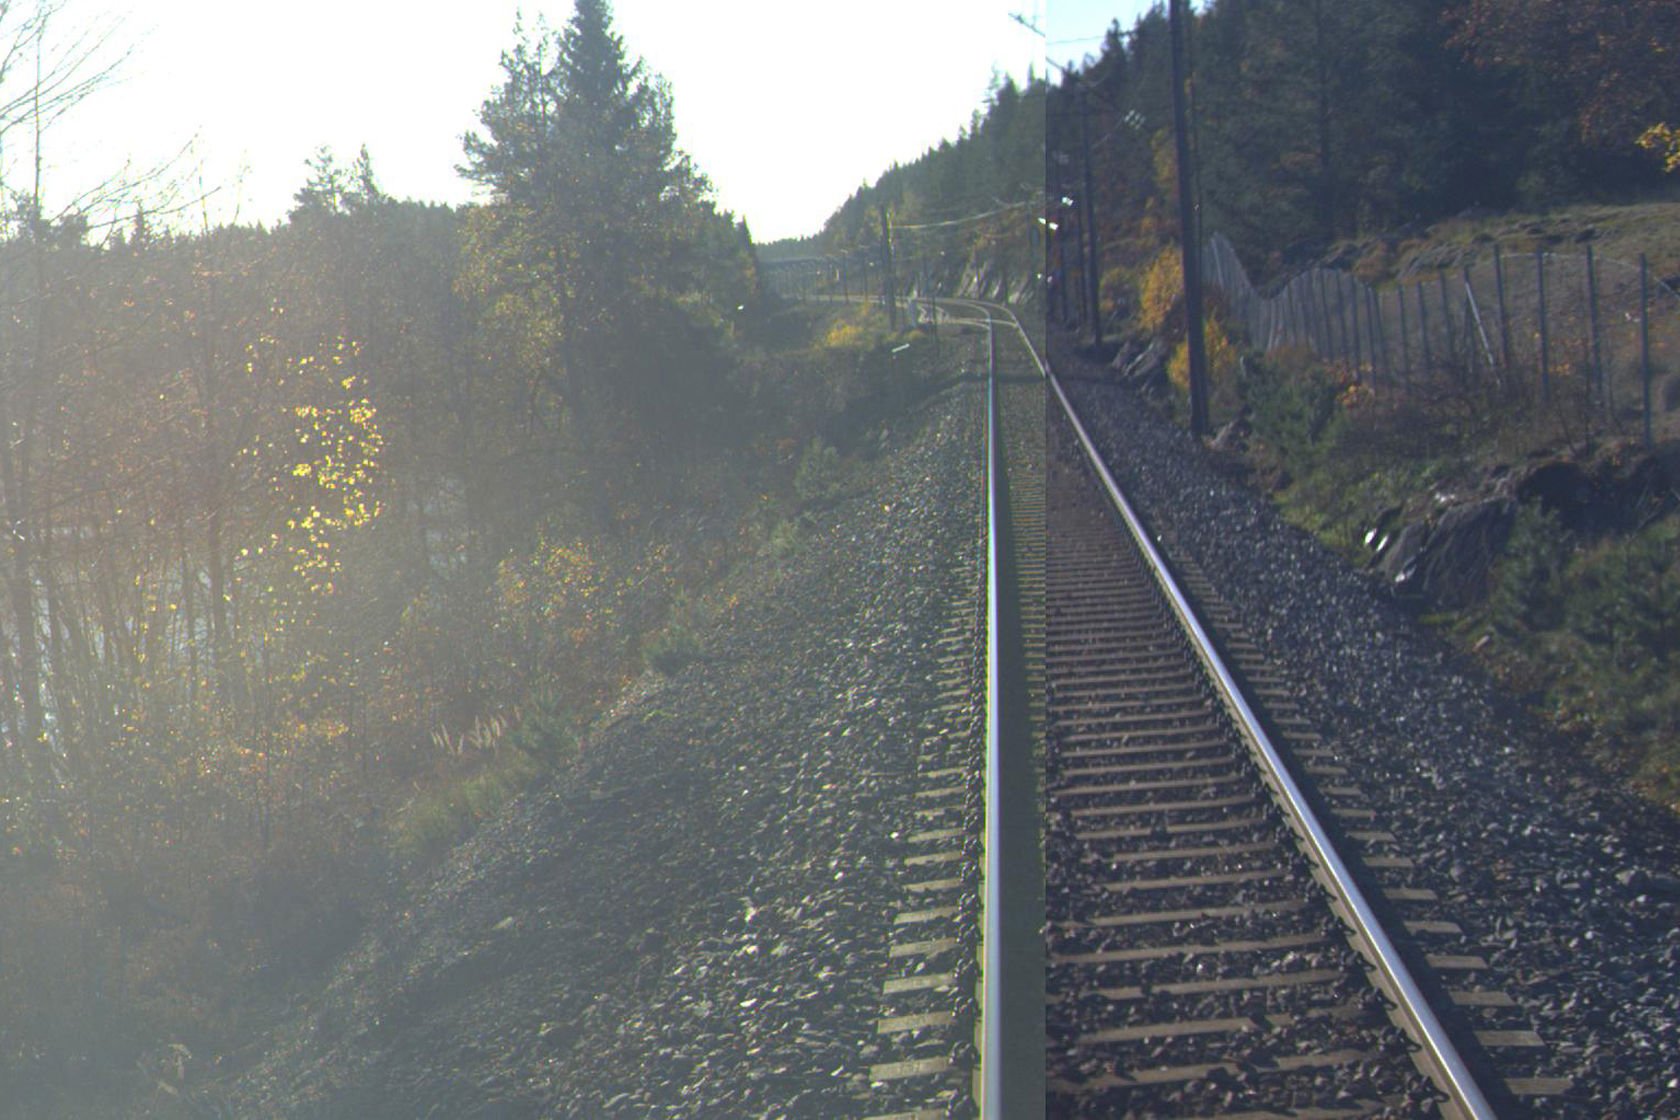 Tracks at Skorstøl station